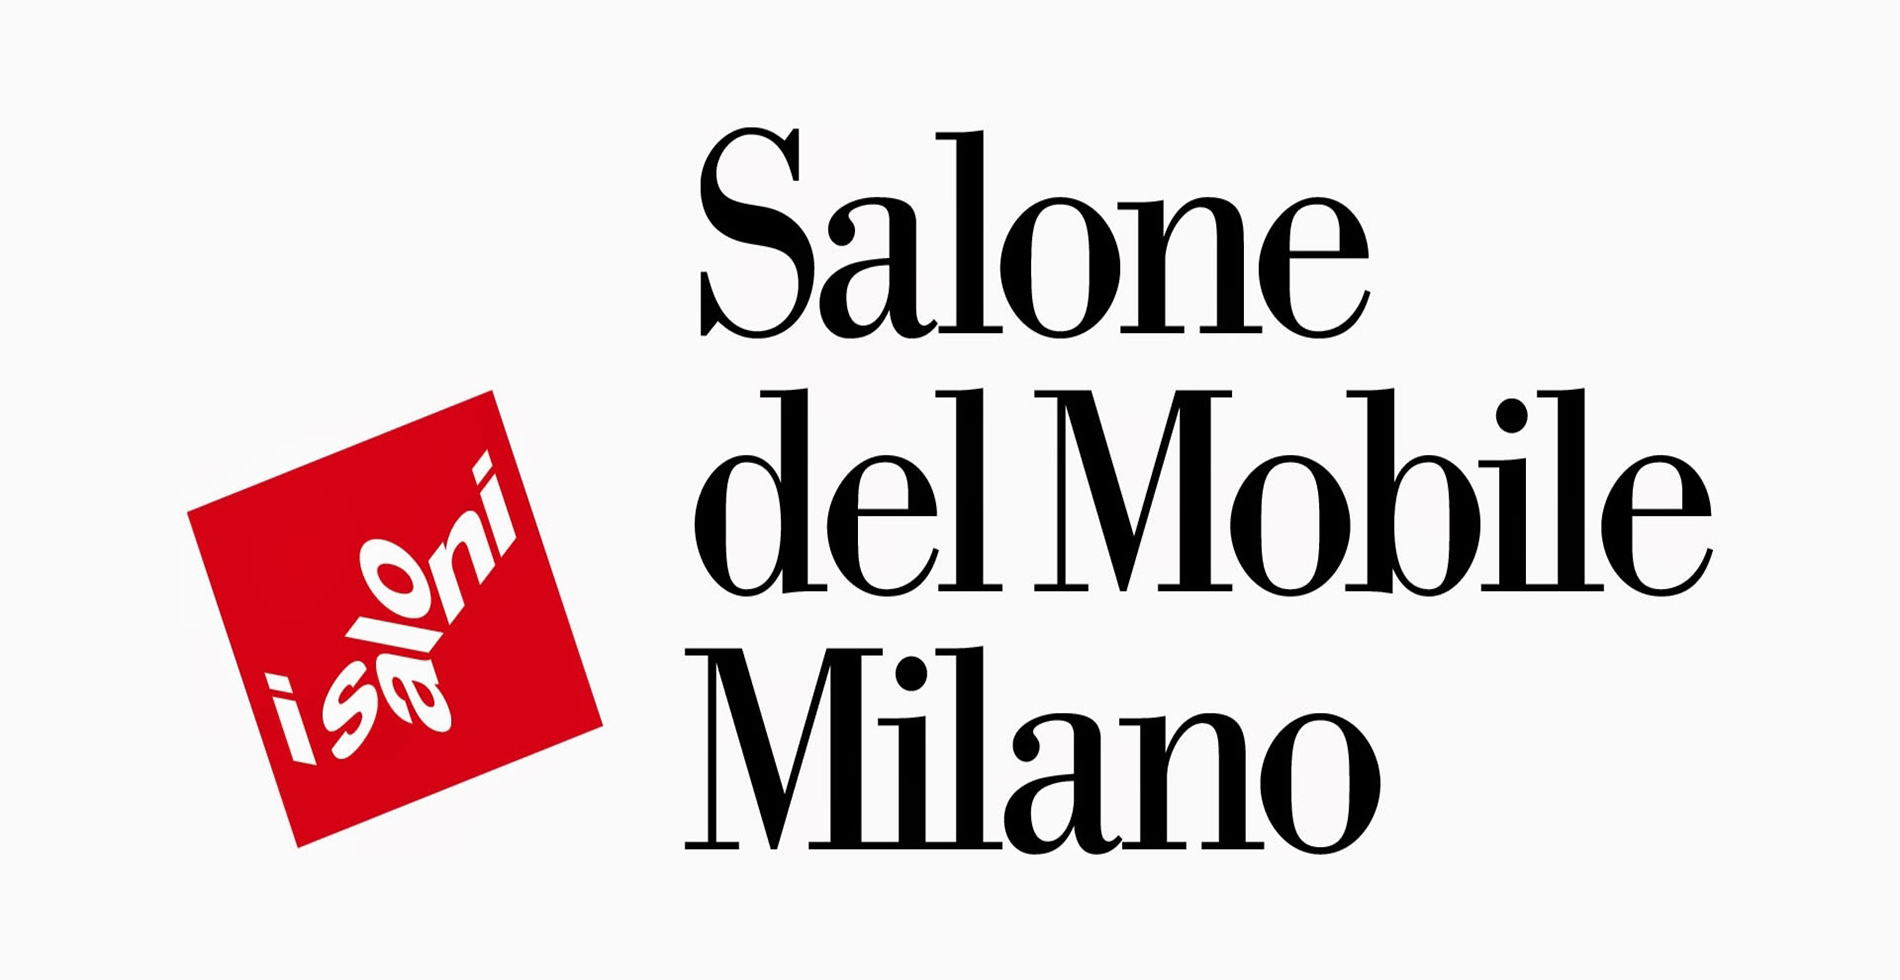 salone-mobile-milano-2017-camilla-bellini-the-diary-of-a-designer.jpg